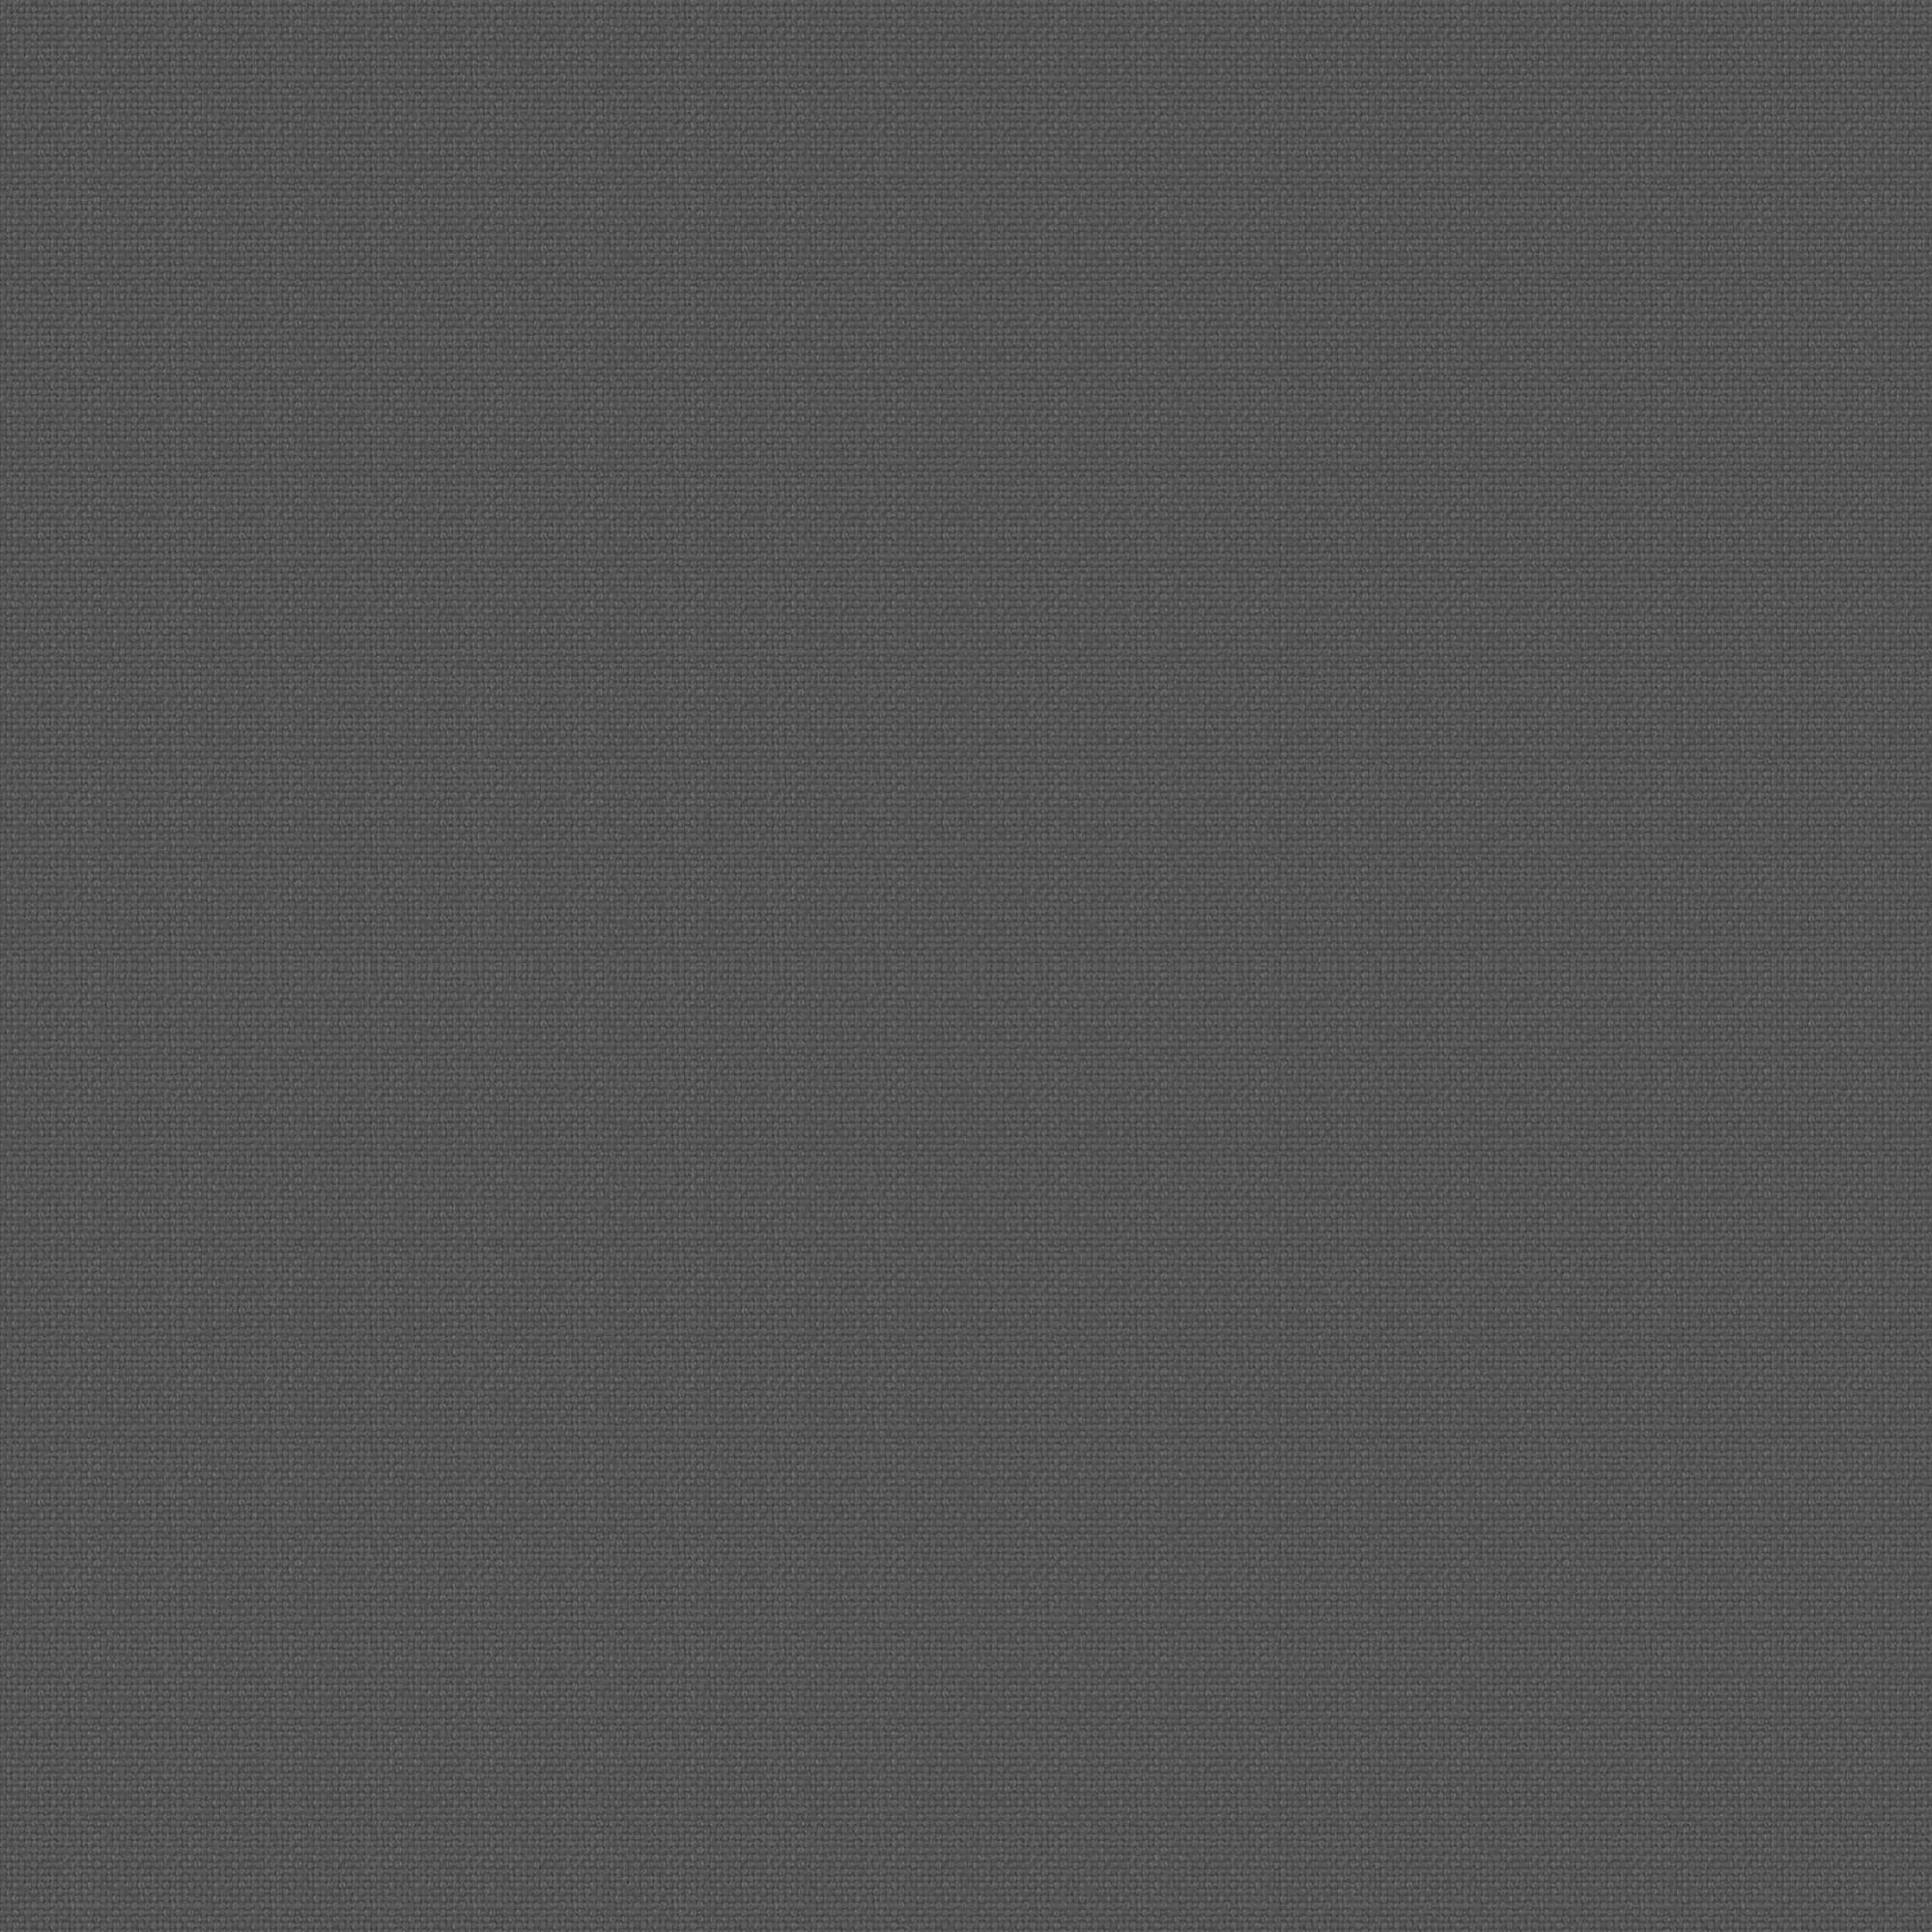 Tela al corte loneta mimos gris ancho 280 cm